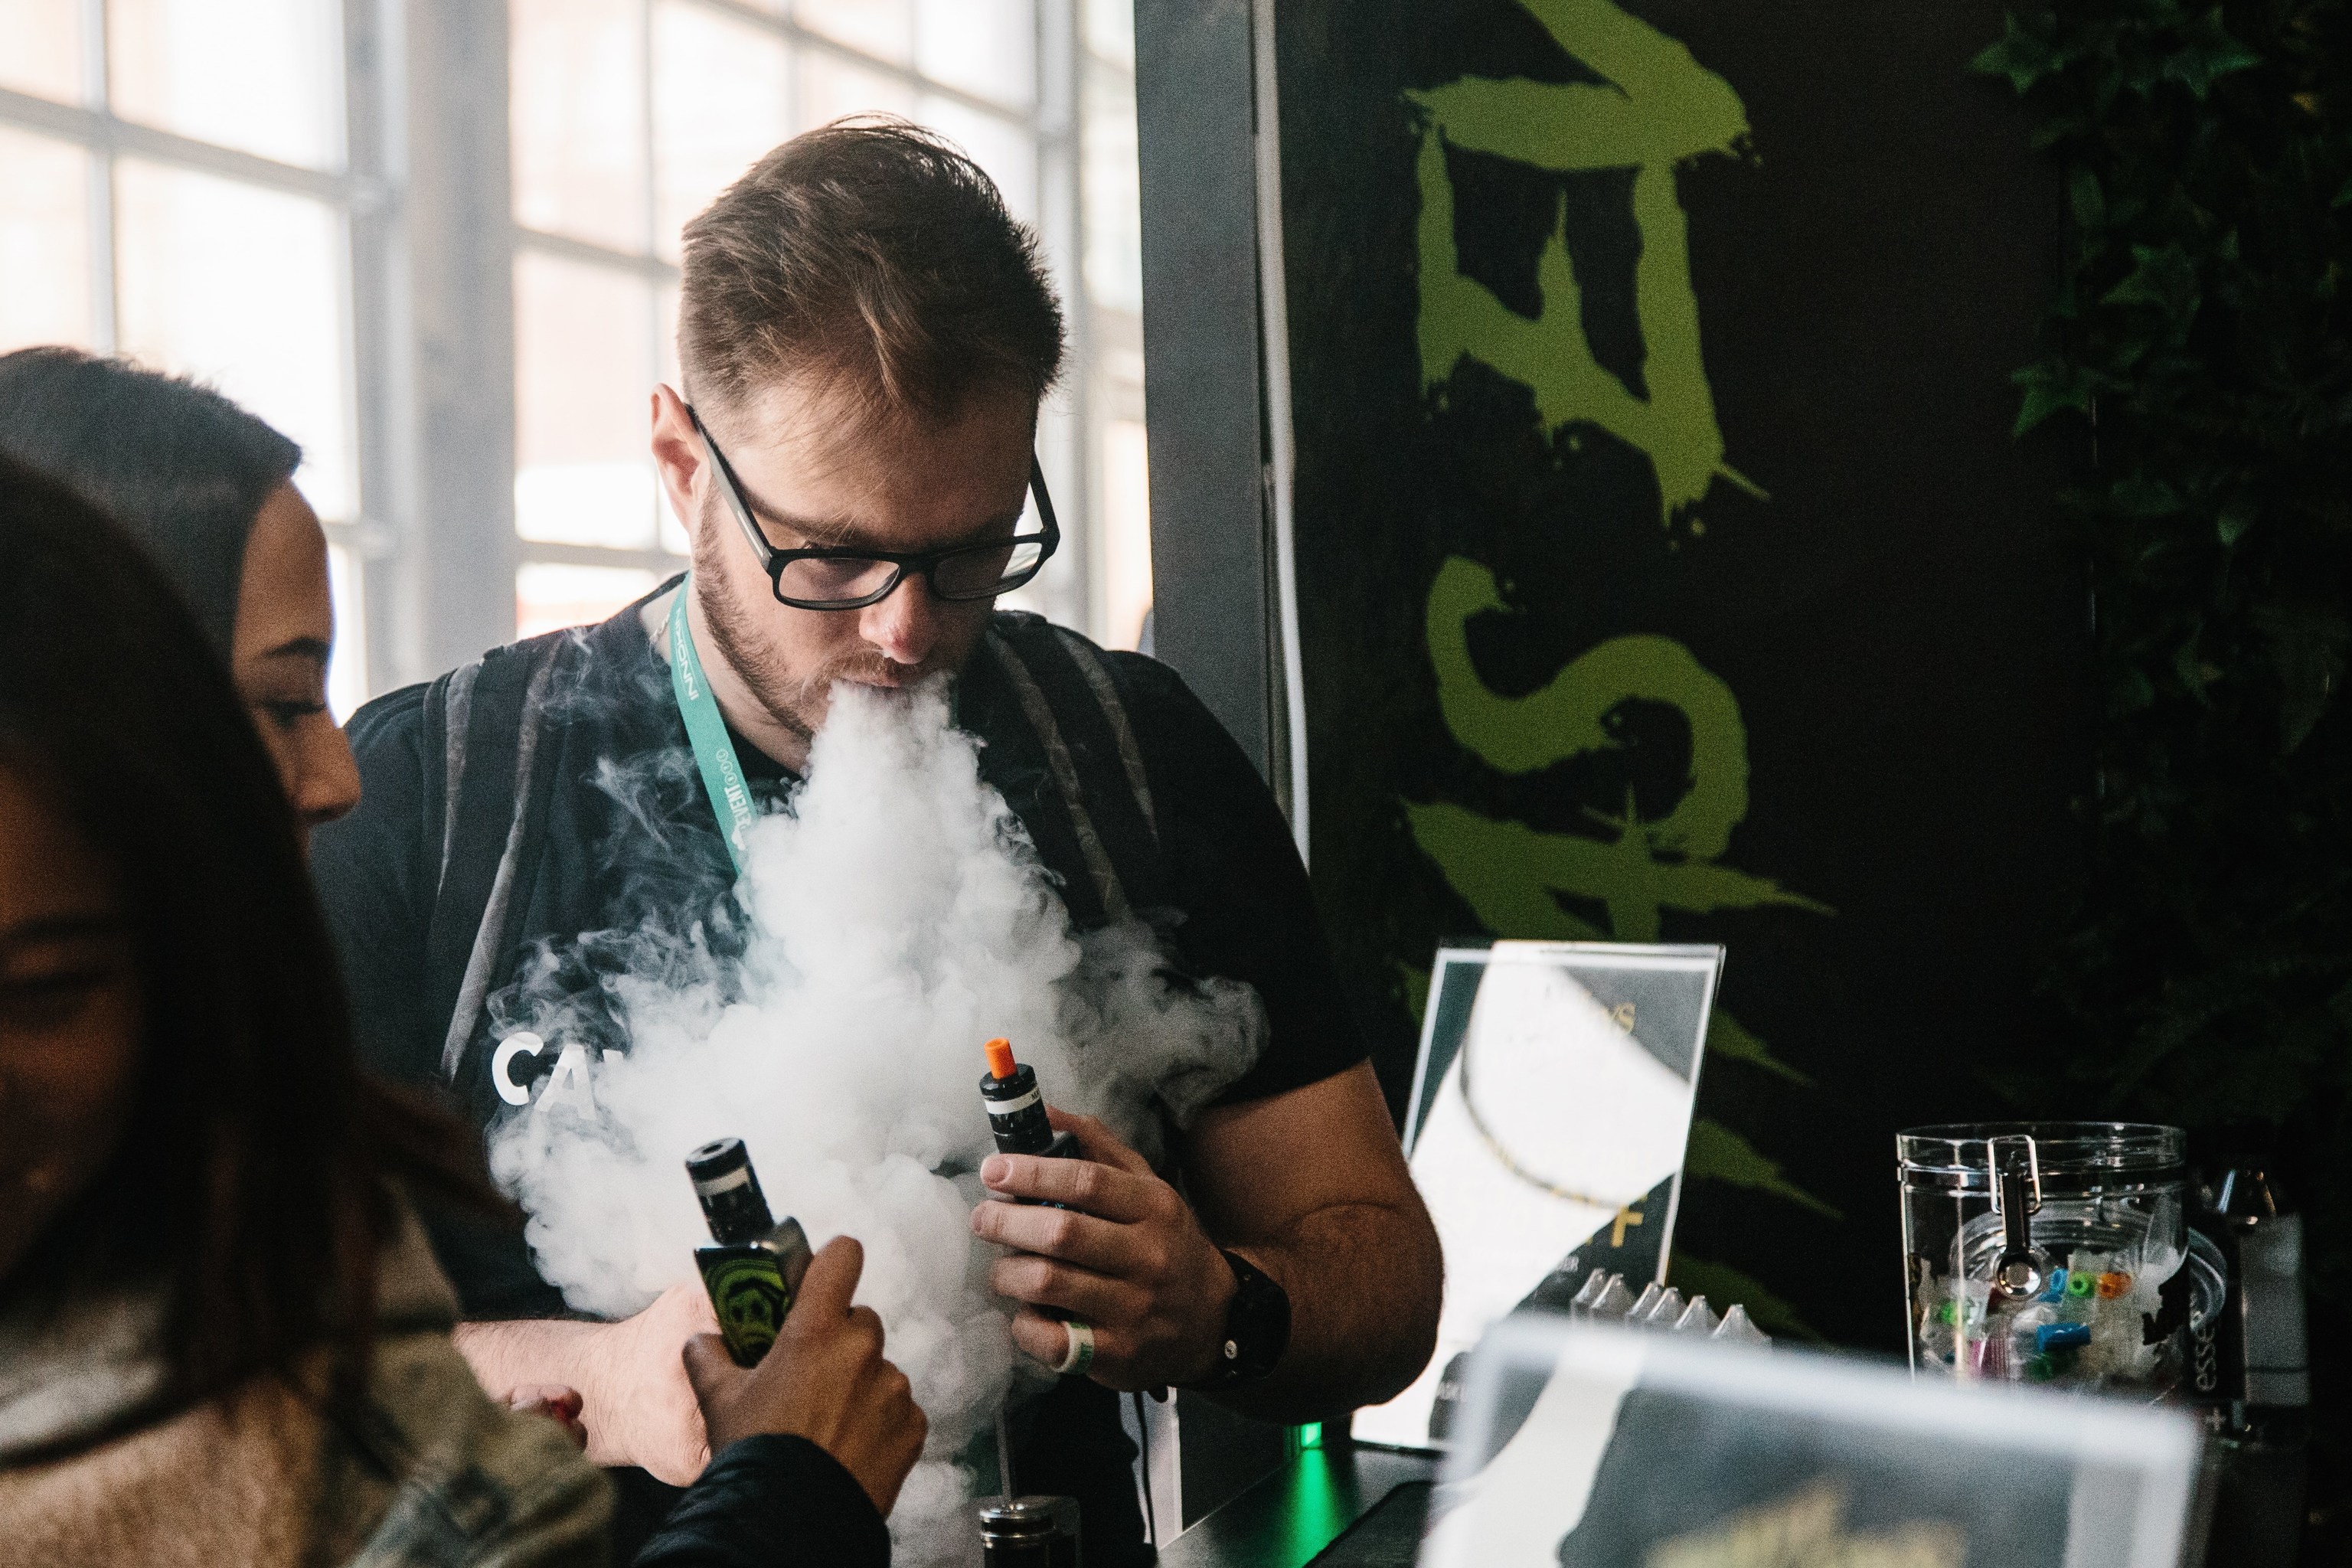 Un hombre expulsa vapor por la boca durante la tercera edición de "Vapevent Trade Show", una feria comercial que recoge las últimas tendencias de vapeo. ALBA VIGARAY EFE